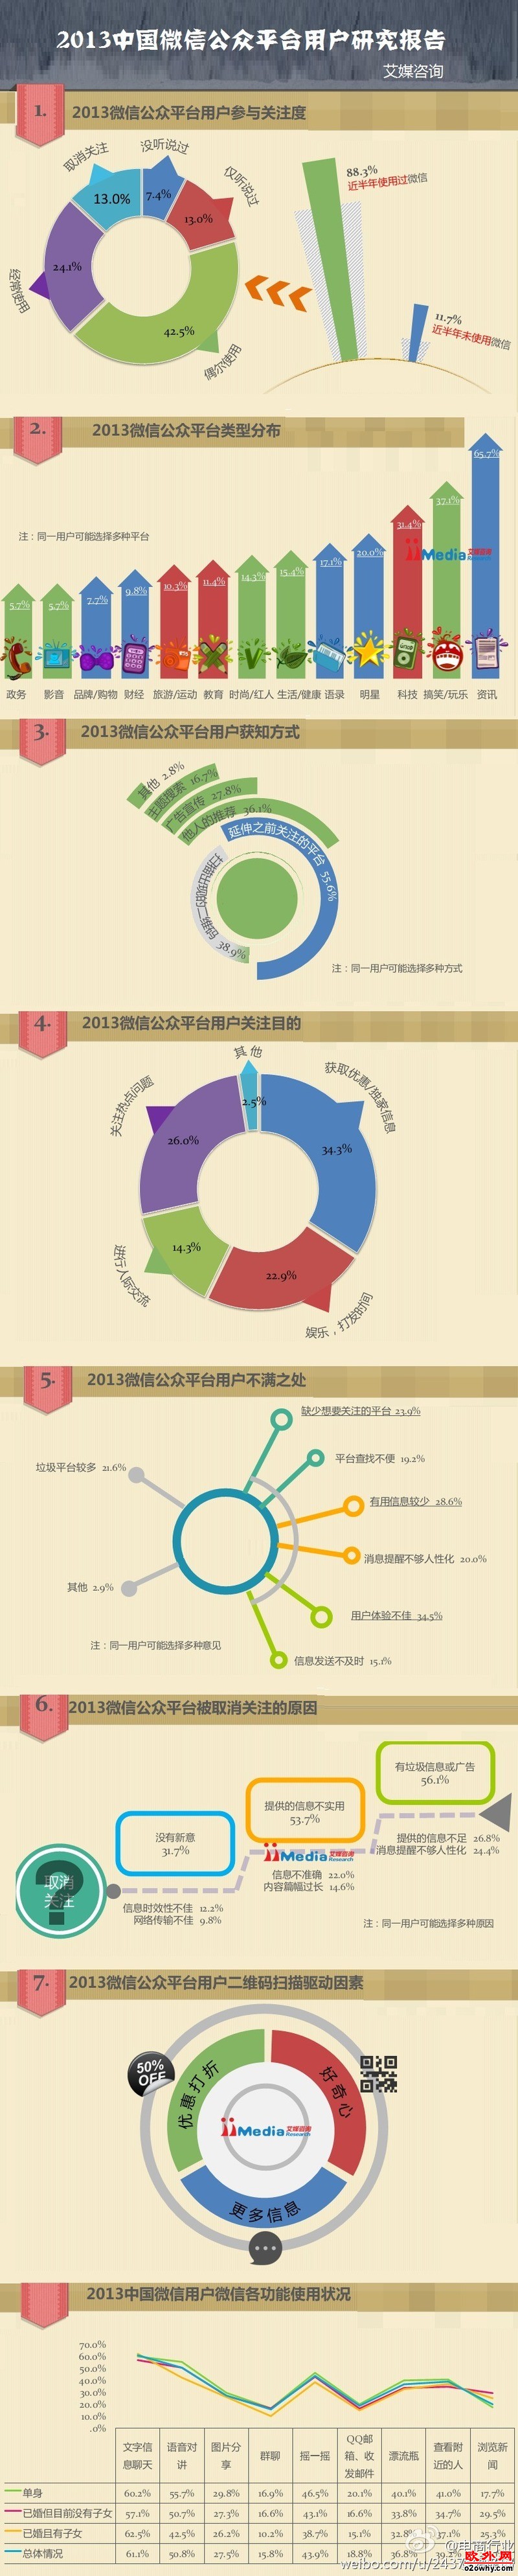 2013中国微信公众平台用户研究报告